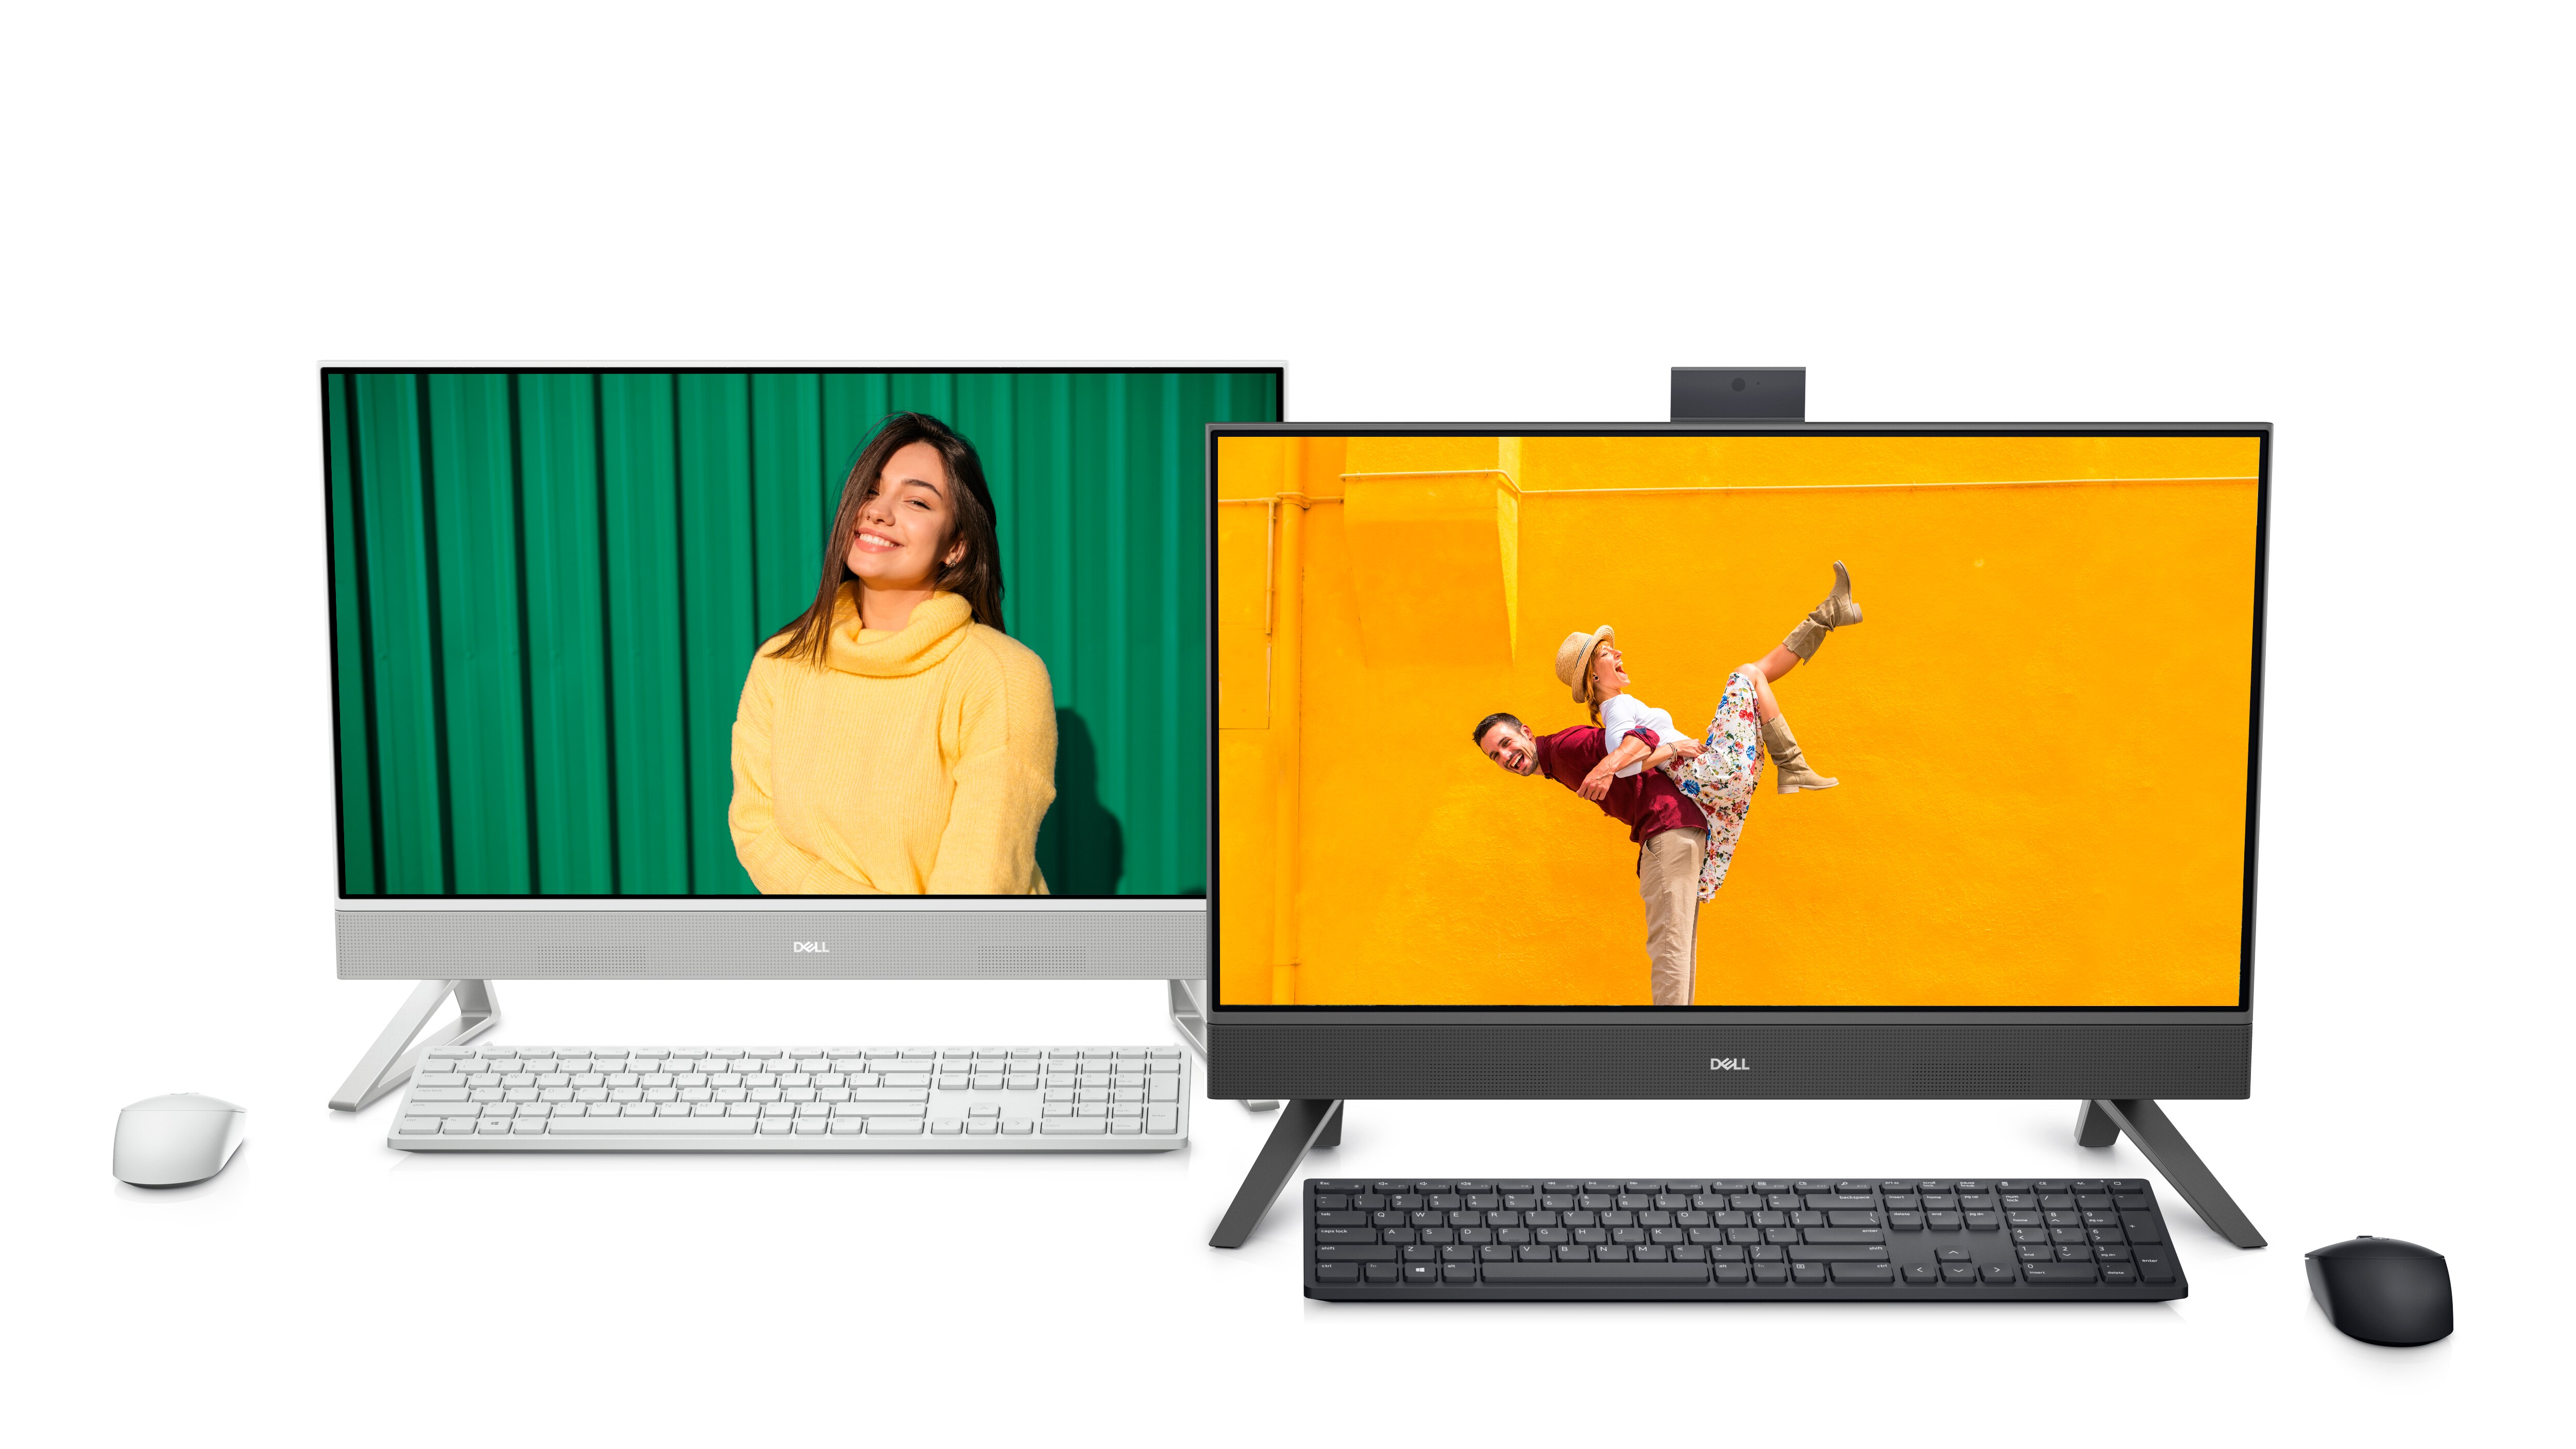 Abbildung von zwei schwarzen und weißen Dell Inspiron 24 5415-All-in-one-Systemen nebeneinander mit unterschiedlichen Bildern auf den Monitorbildschirmen.